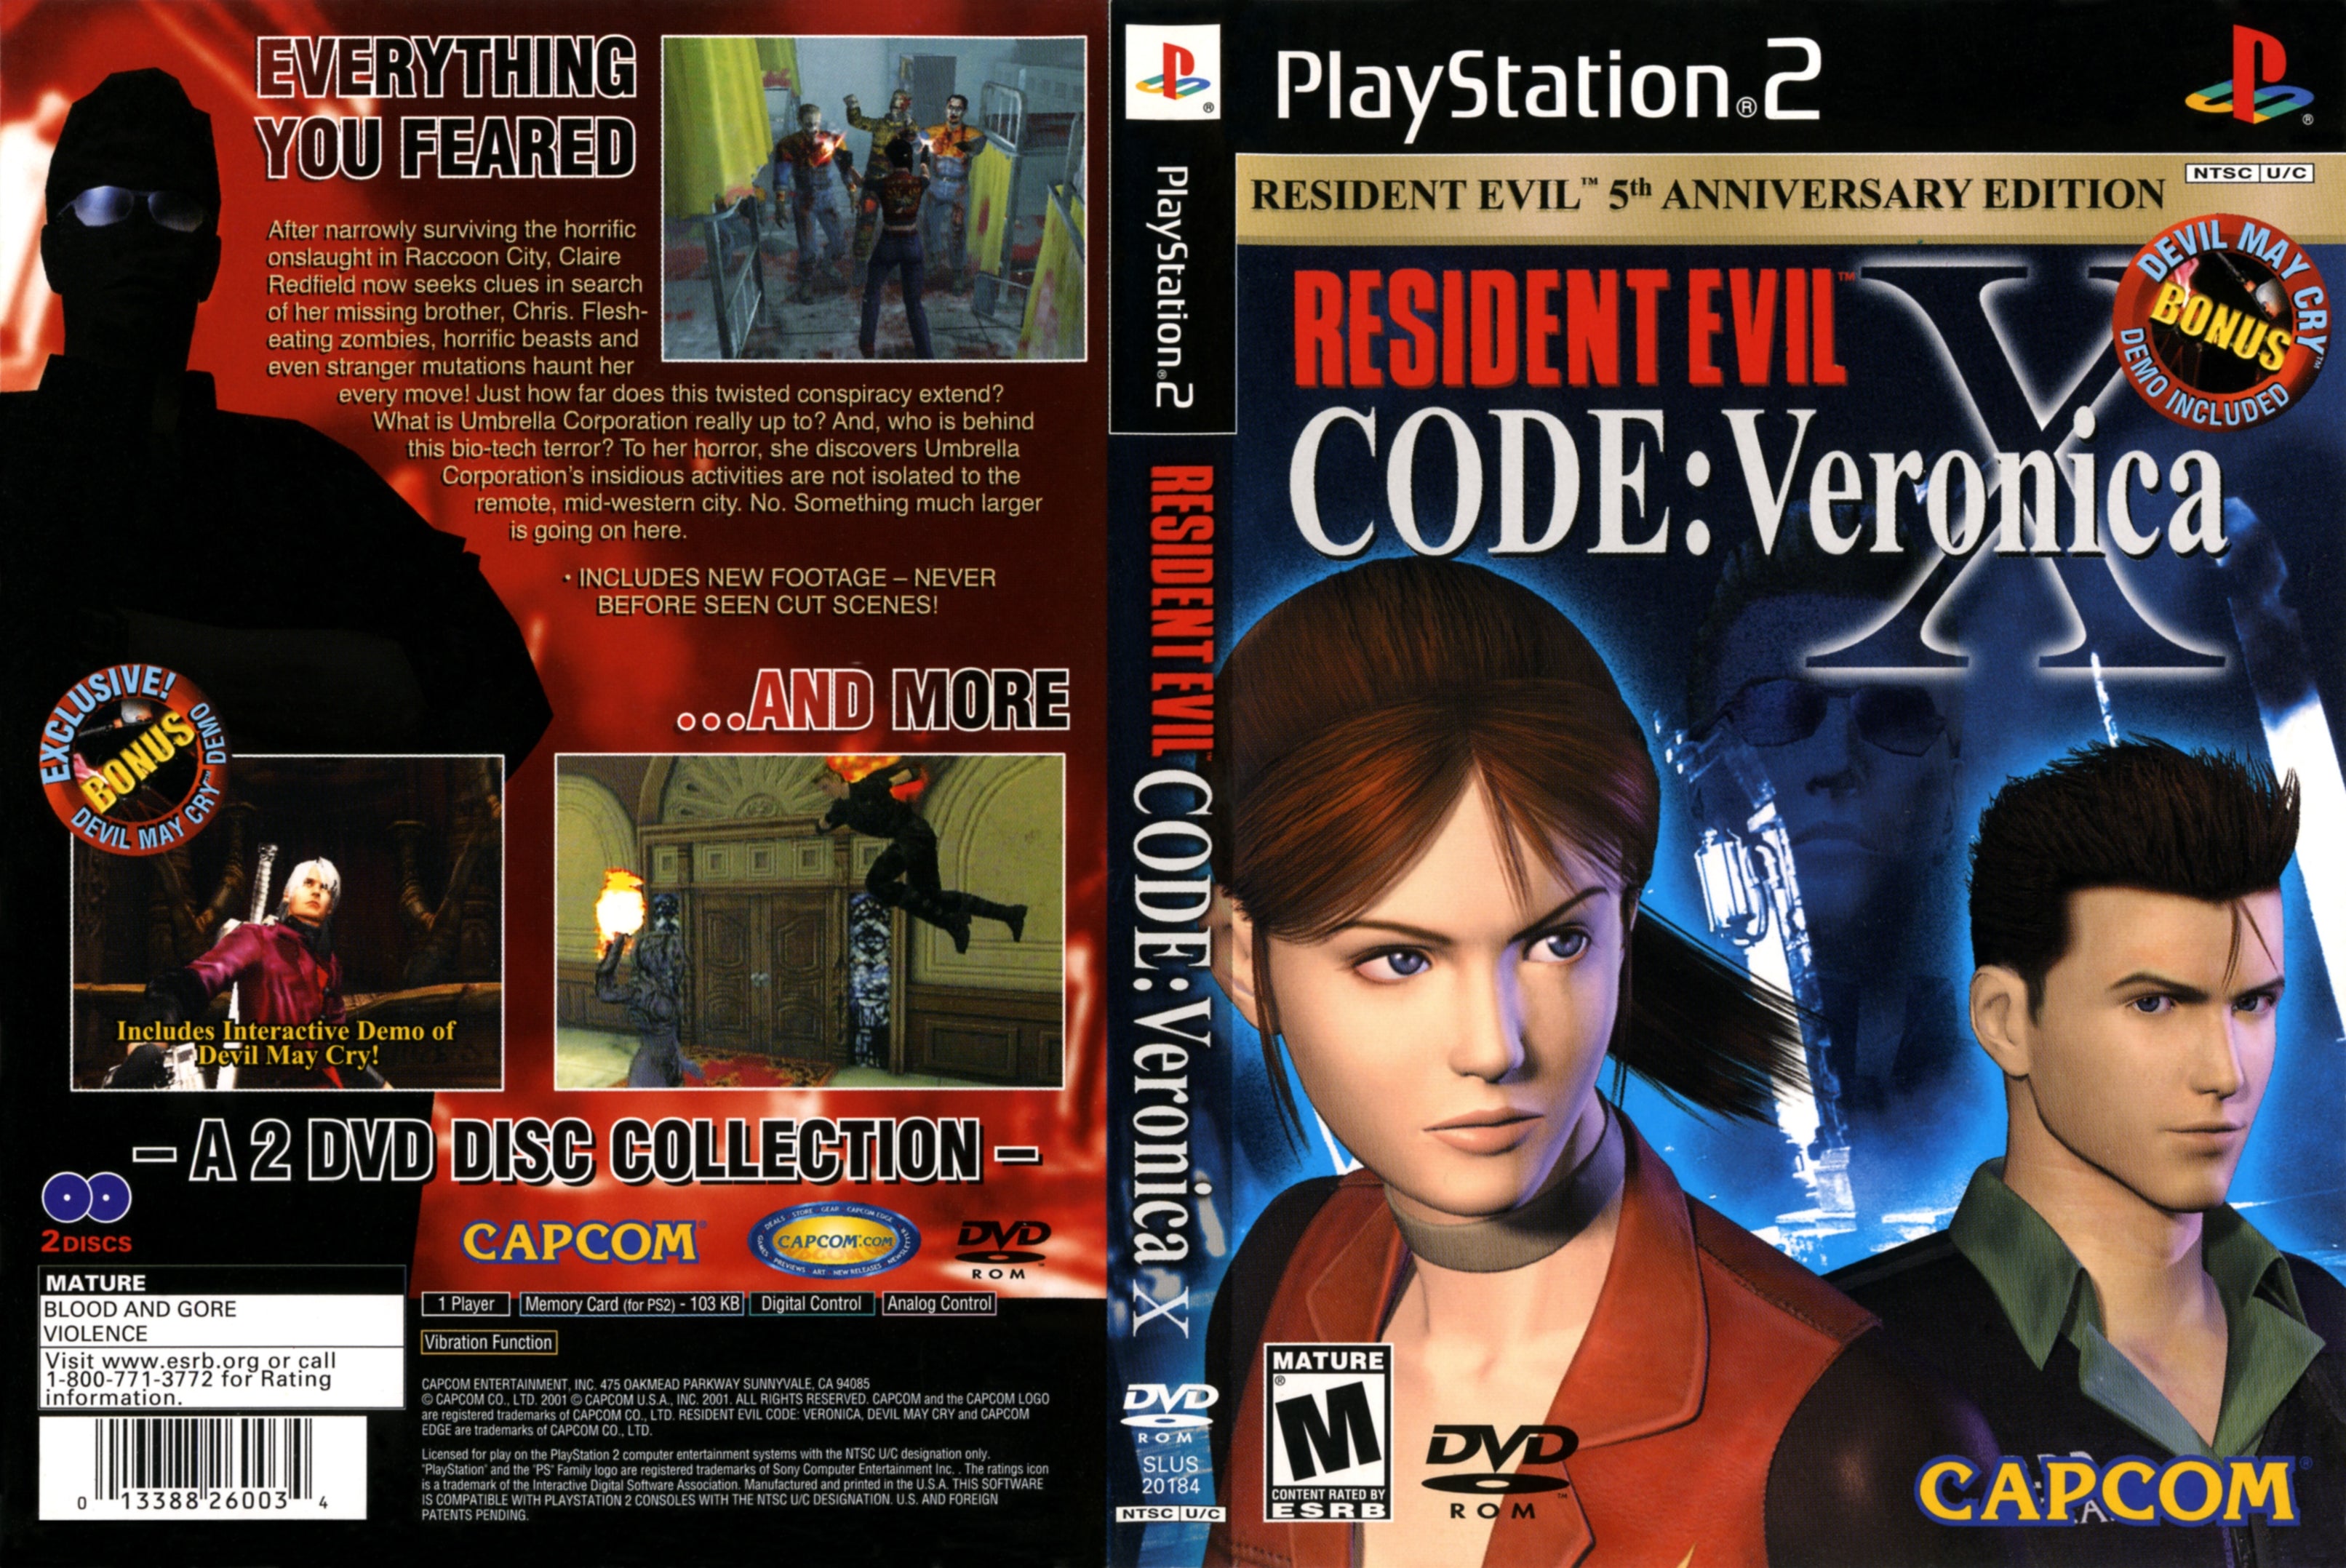 Resident Evil On Brazil: [RECV] Detonado de Resident Evil Code: Veronica X